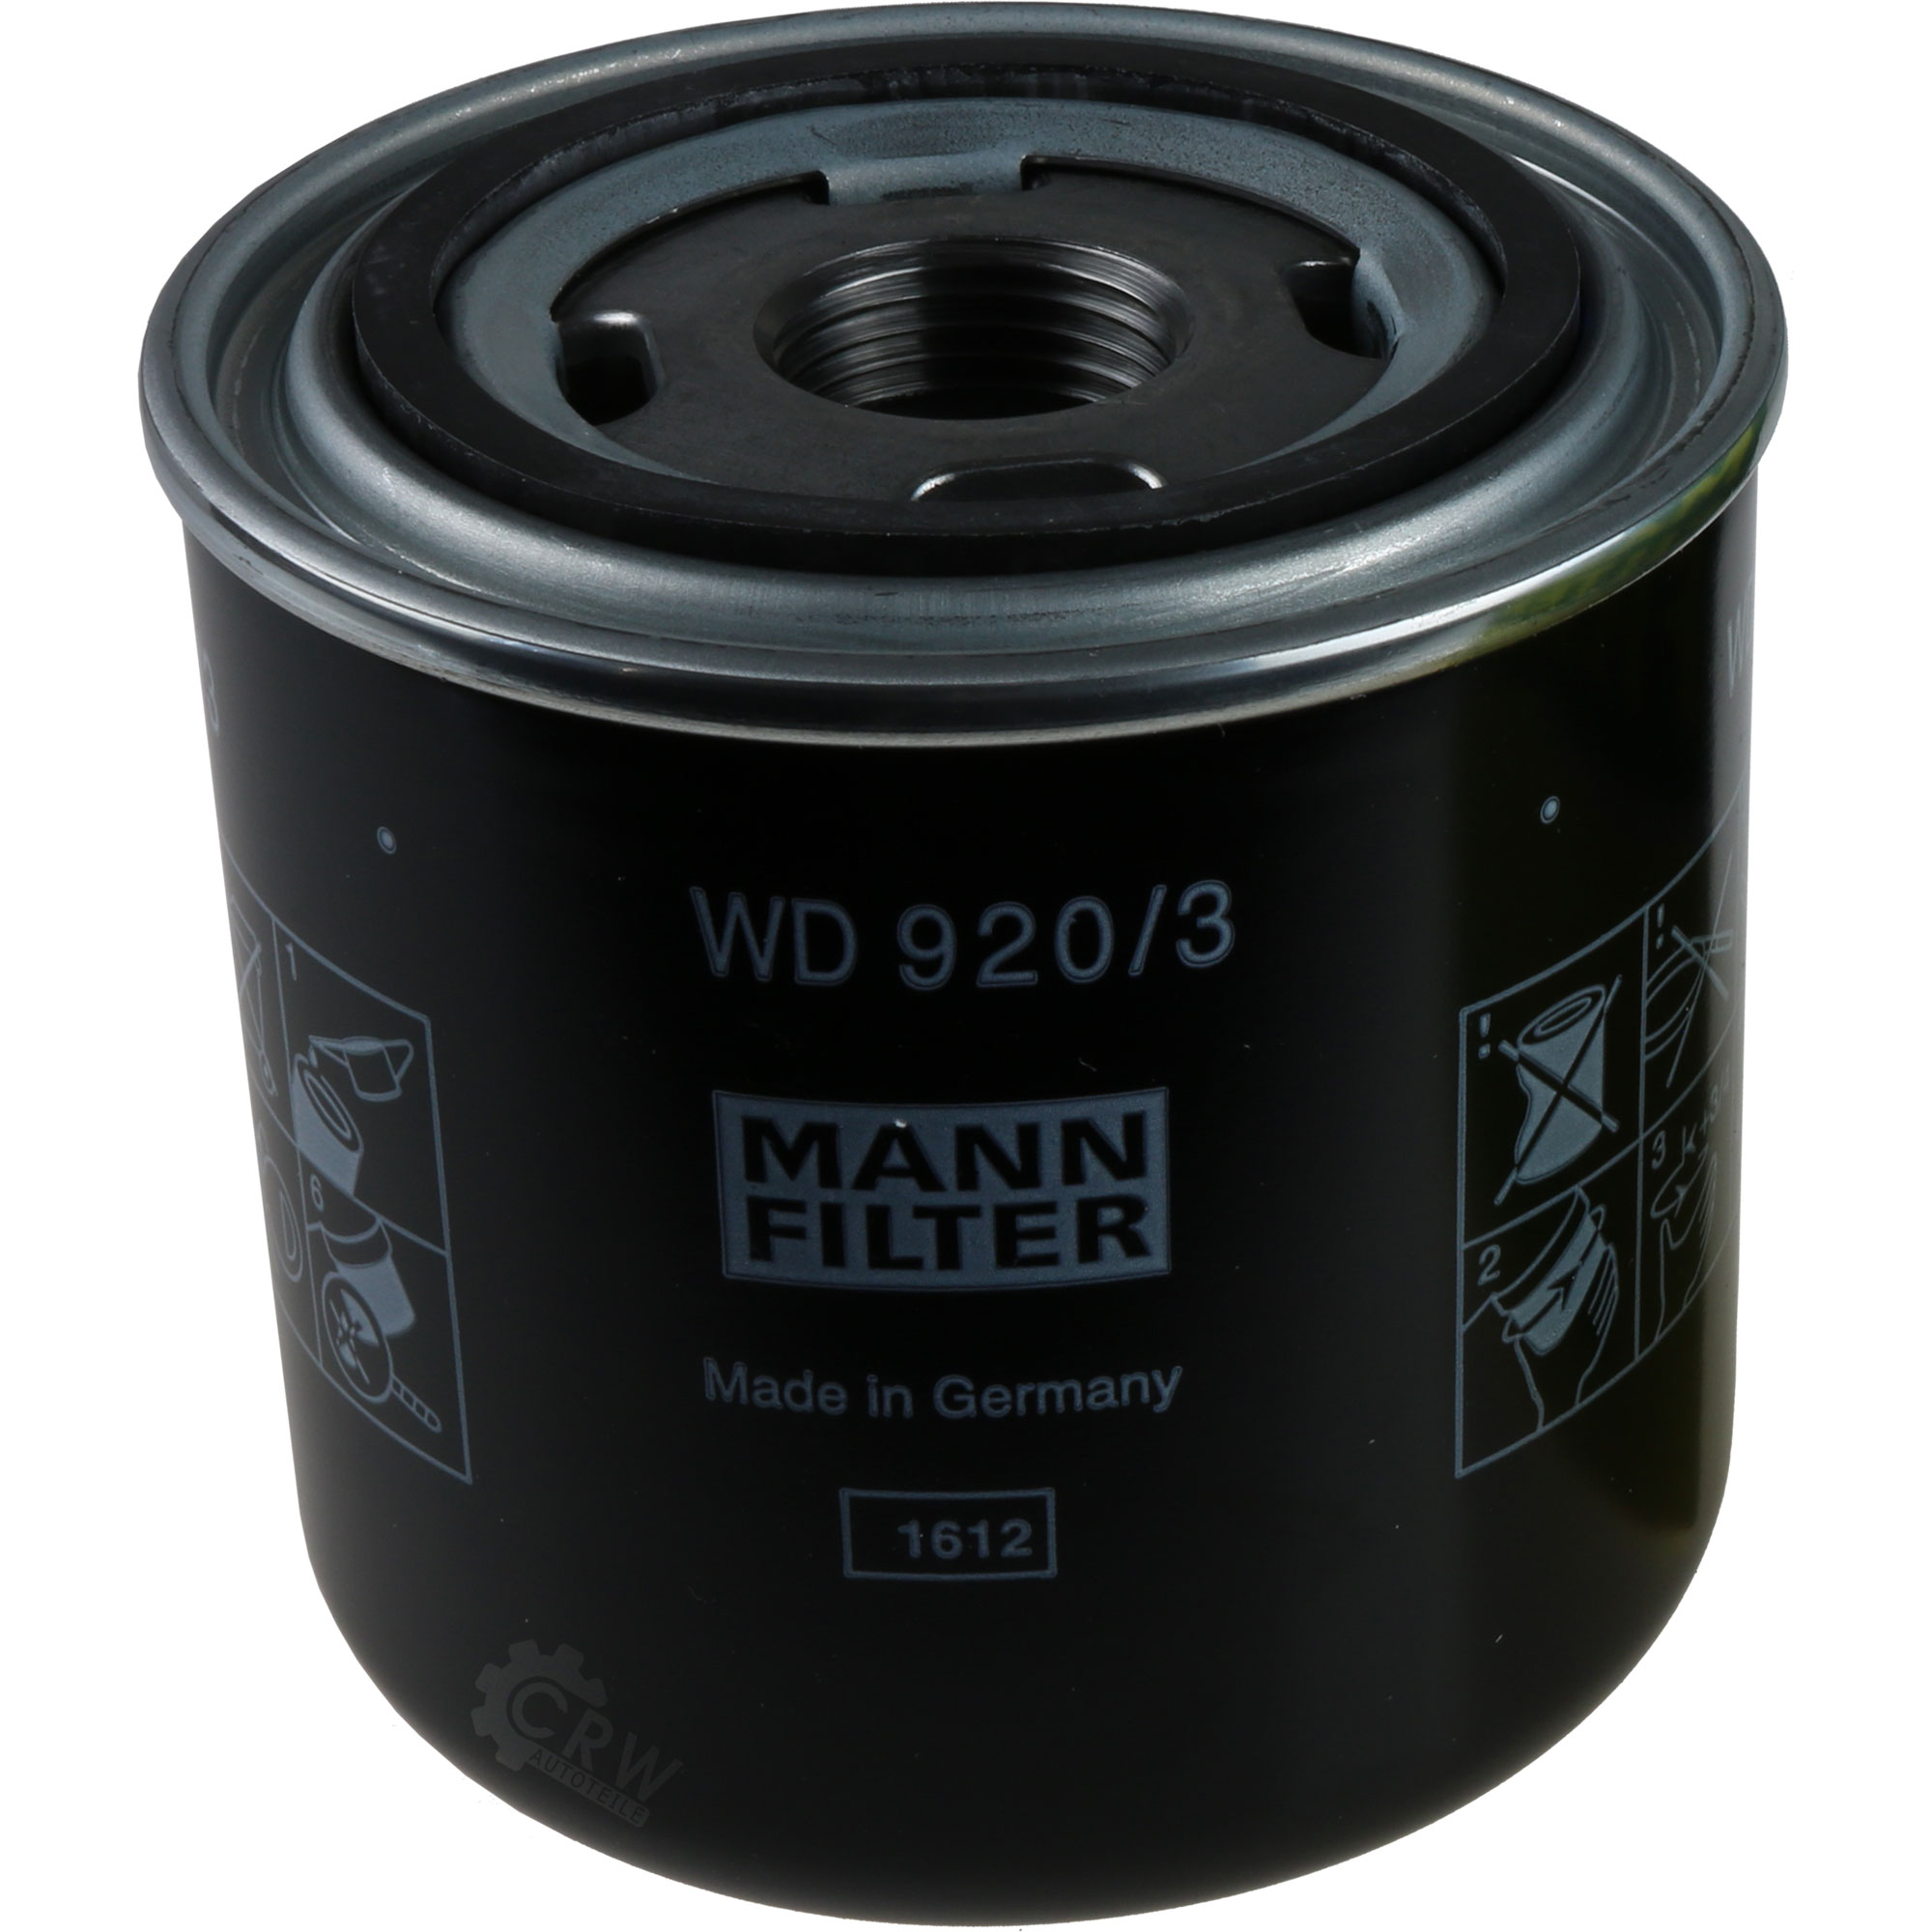 MANN-FILTER Hydraulikfilter für Automatikgetriebe WD 920/3